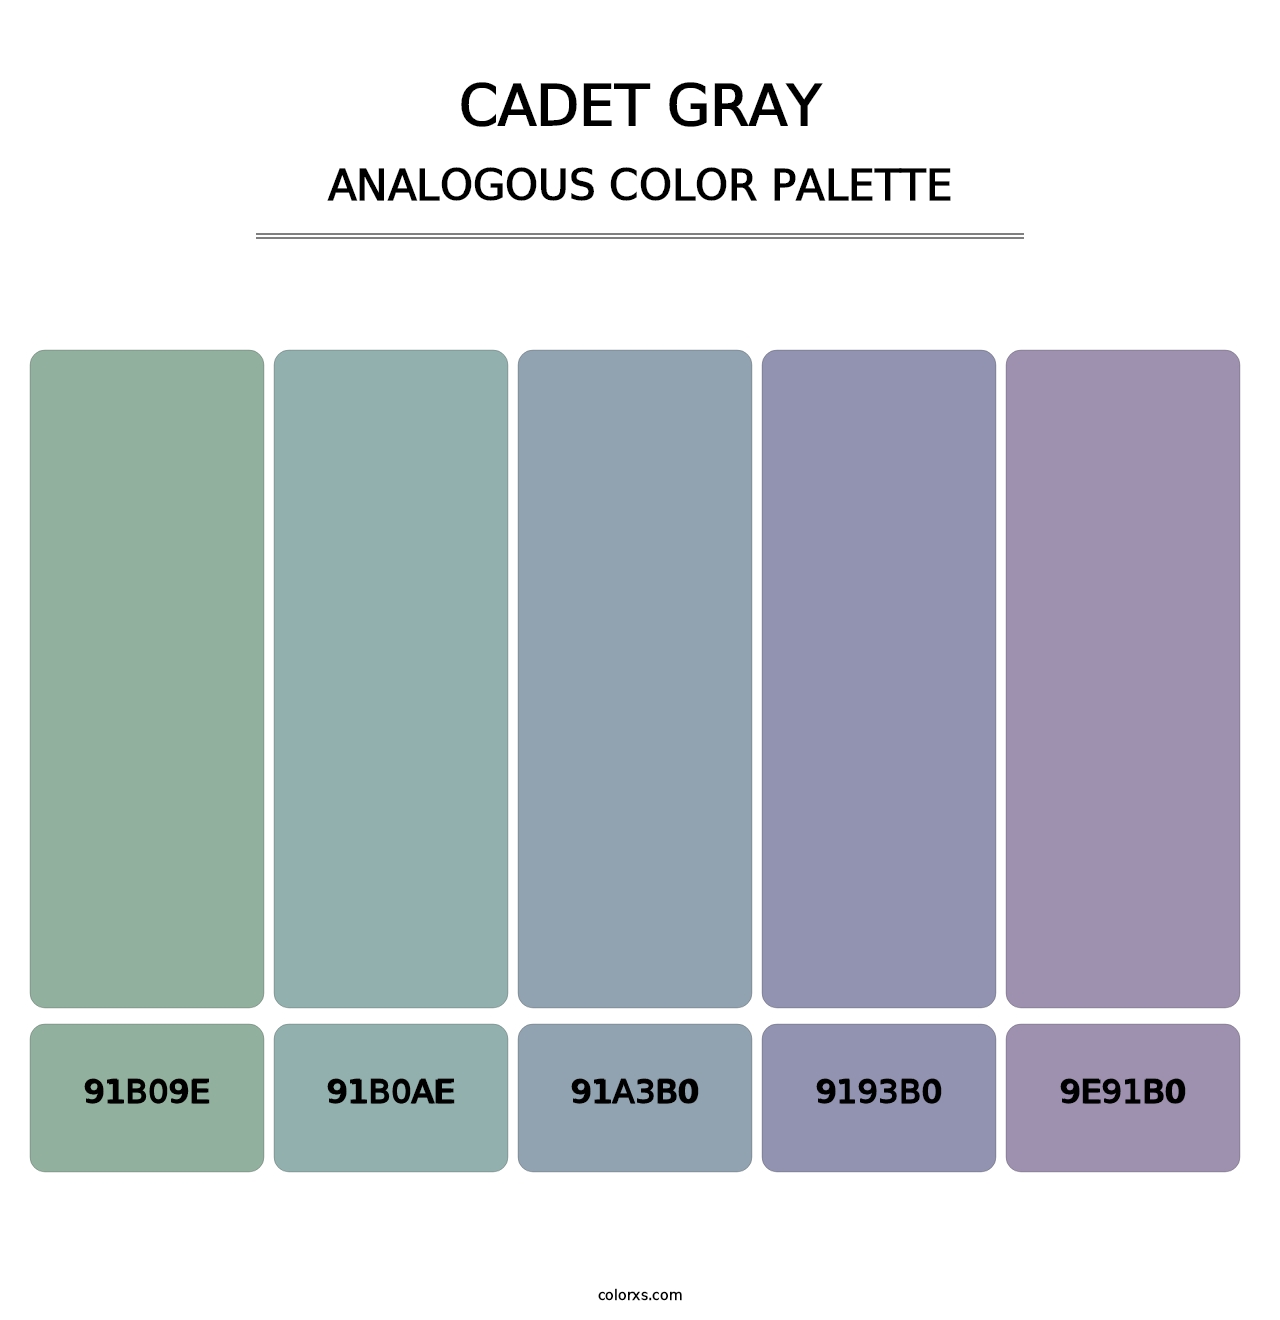 Cadet Gray - Analogous Color Palette